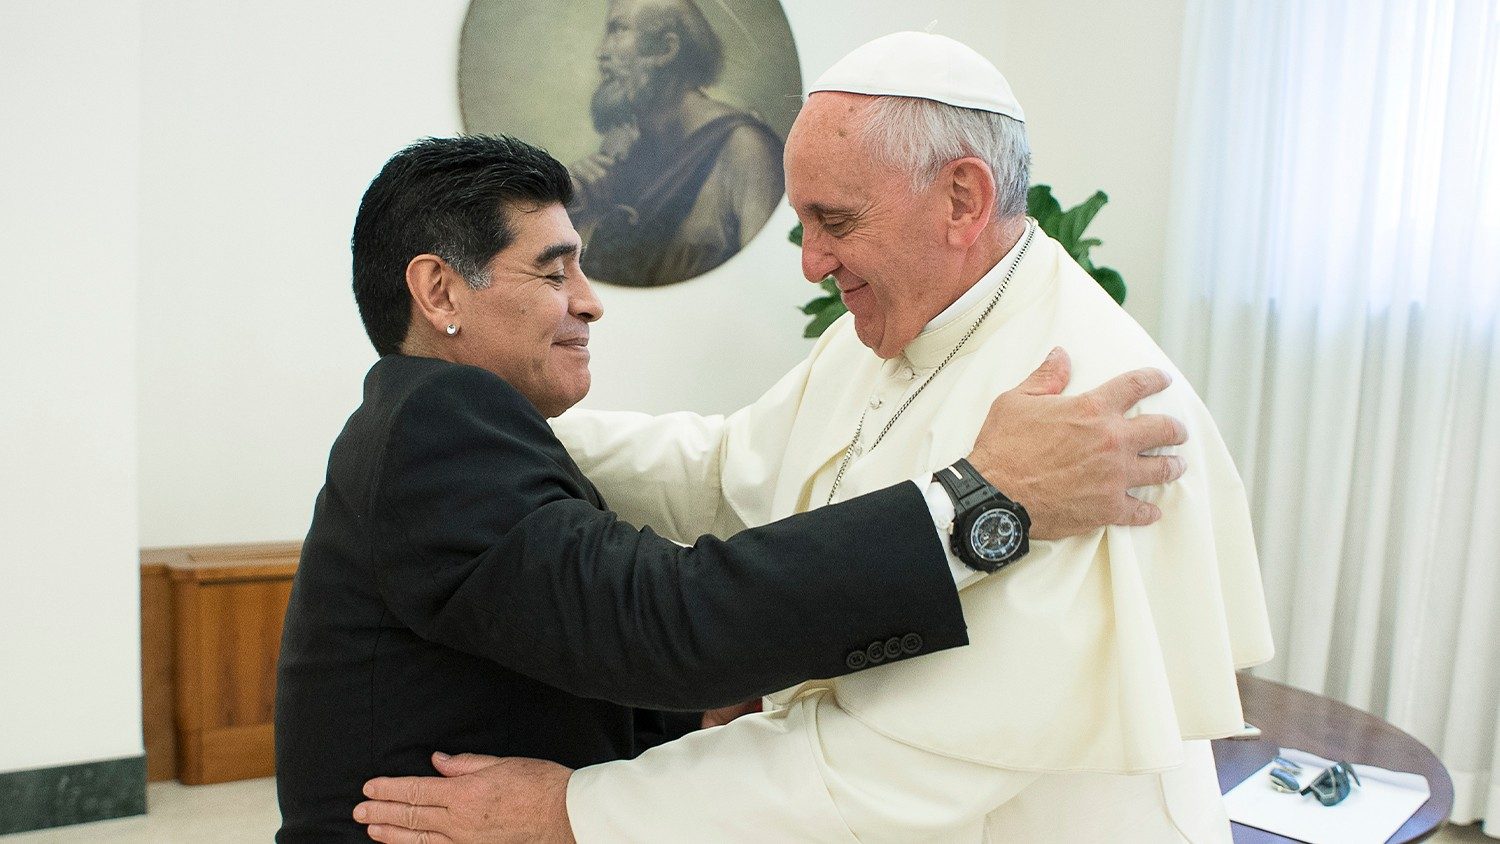 Falleció Maradona, poeta del fútbol. El Papa recuerda en - Vatican News